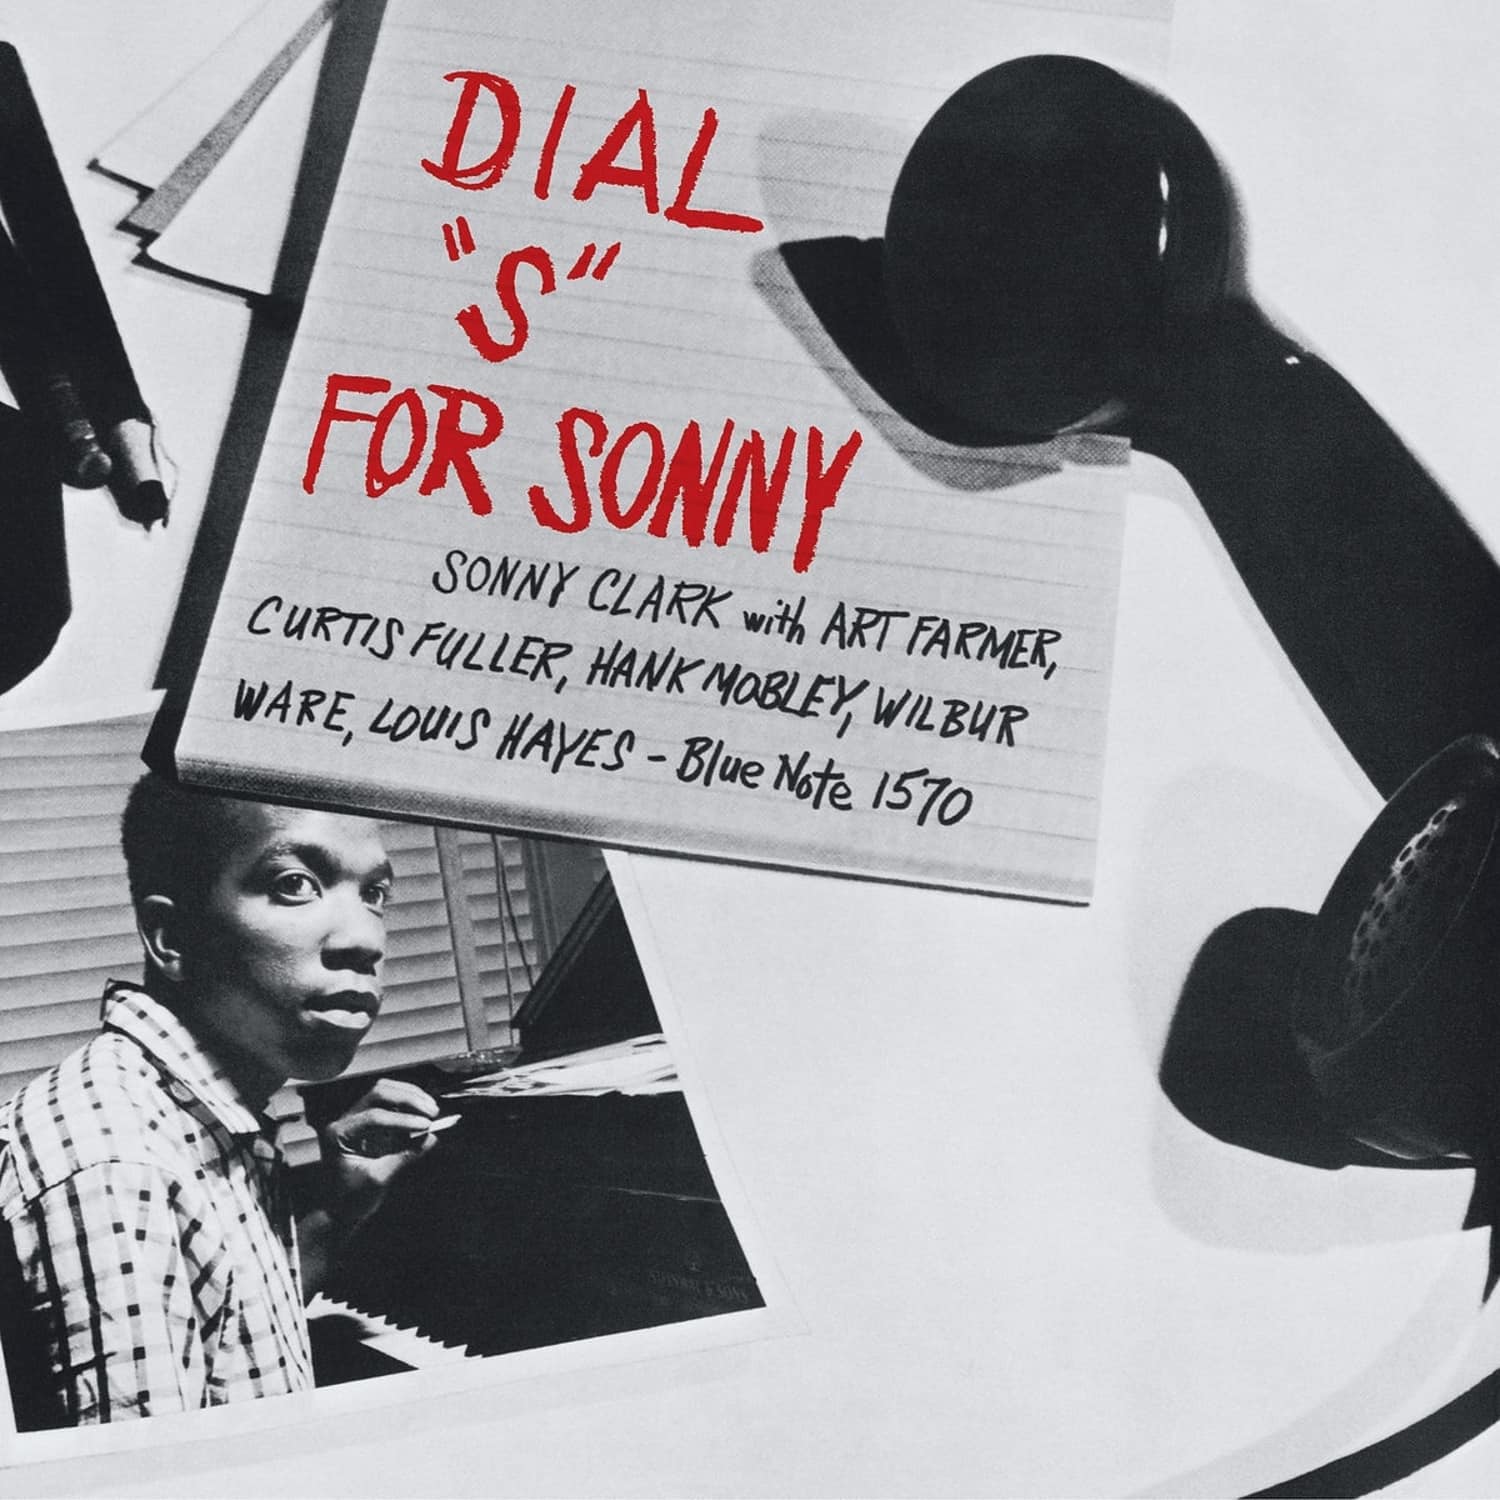 Sonny Clark - DIAL - S - FOR SONNY 